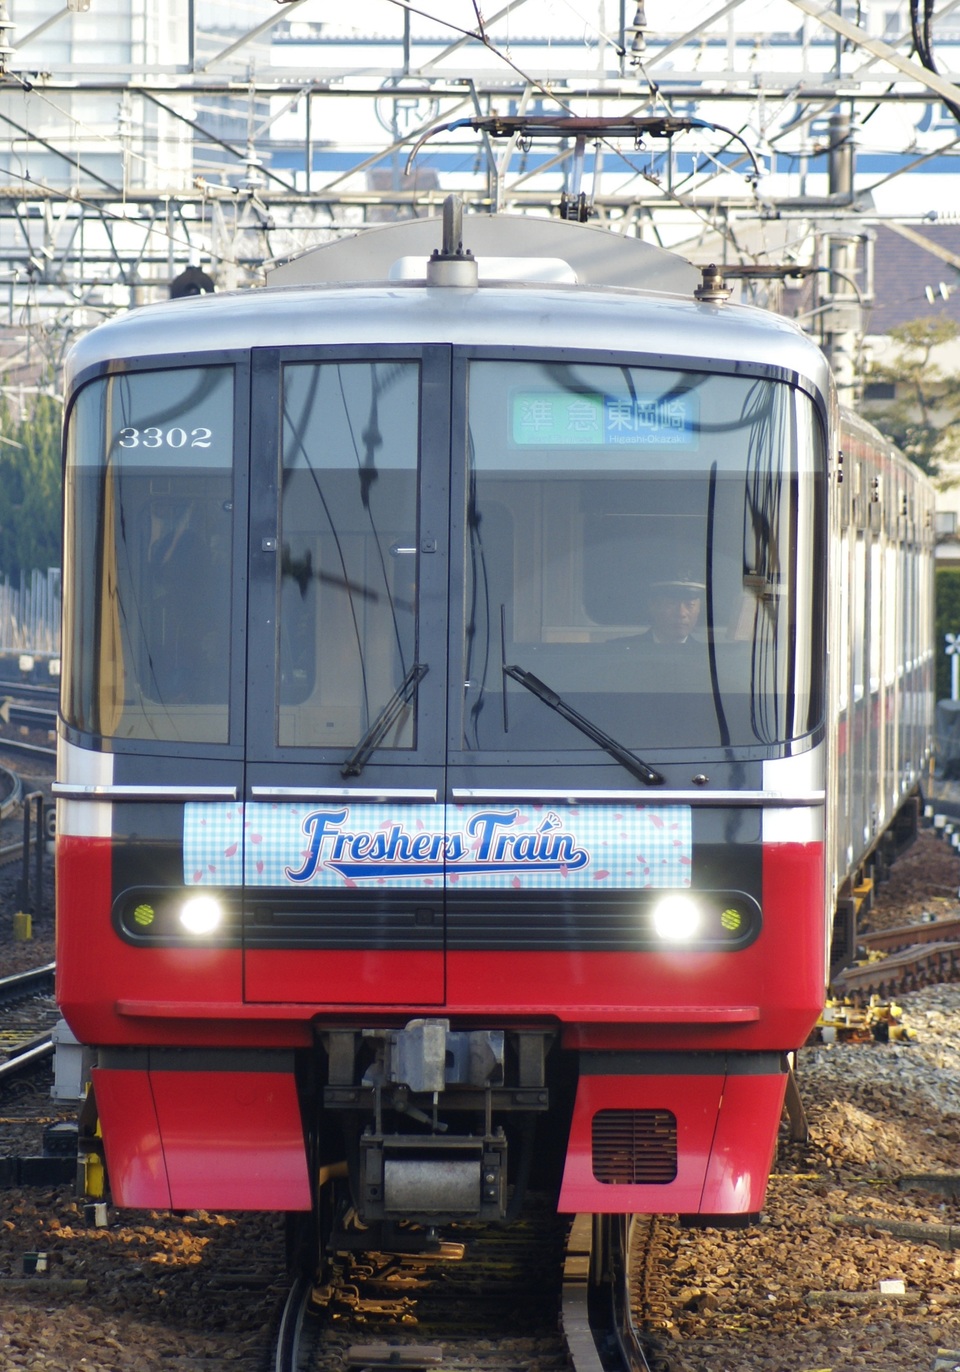 【名鉄】「フレッシャーズトレイン」ラッピング列車運行開始の拡大写真